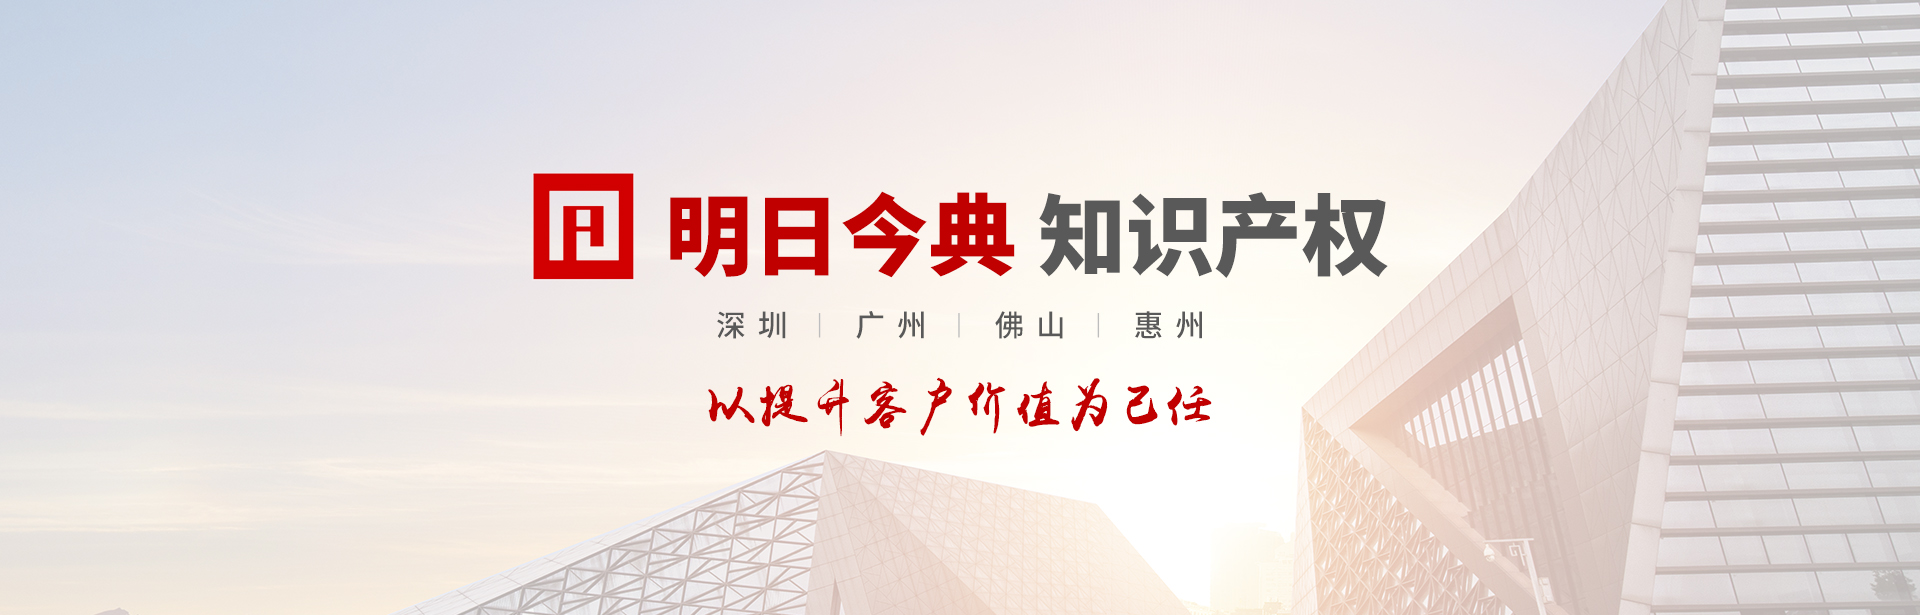 深圳市市场监督管理局龙华监管局关于开展2022年龙华区质量示范企业评选的通知